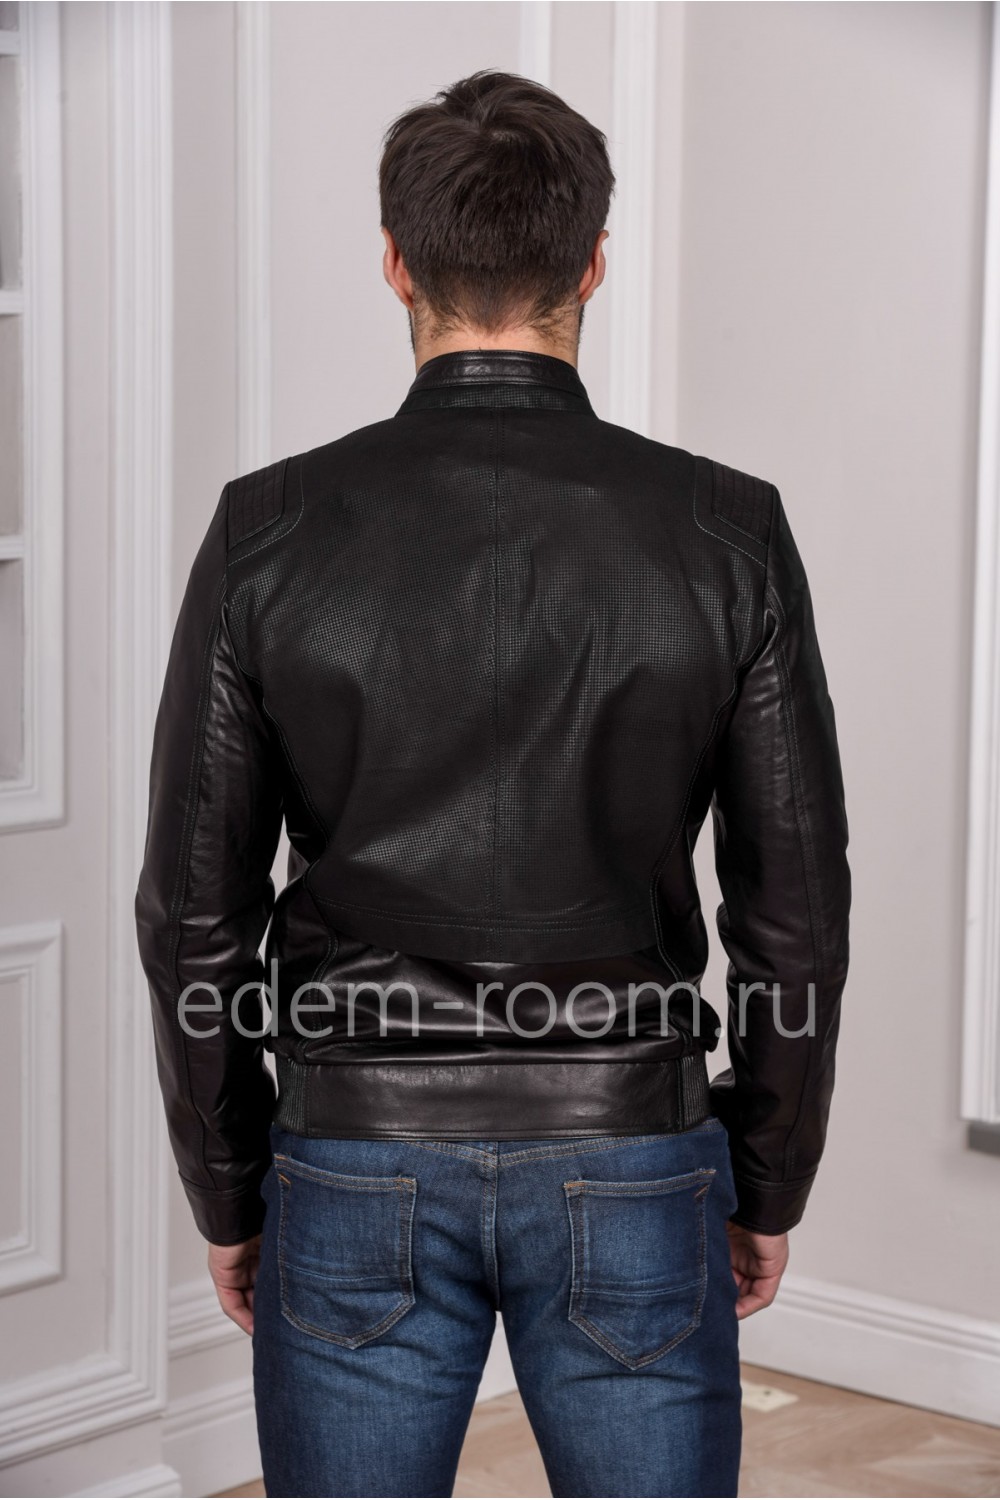 Мужская кожаная куртка из натуральной кожи, черная и модная